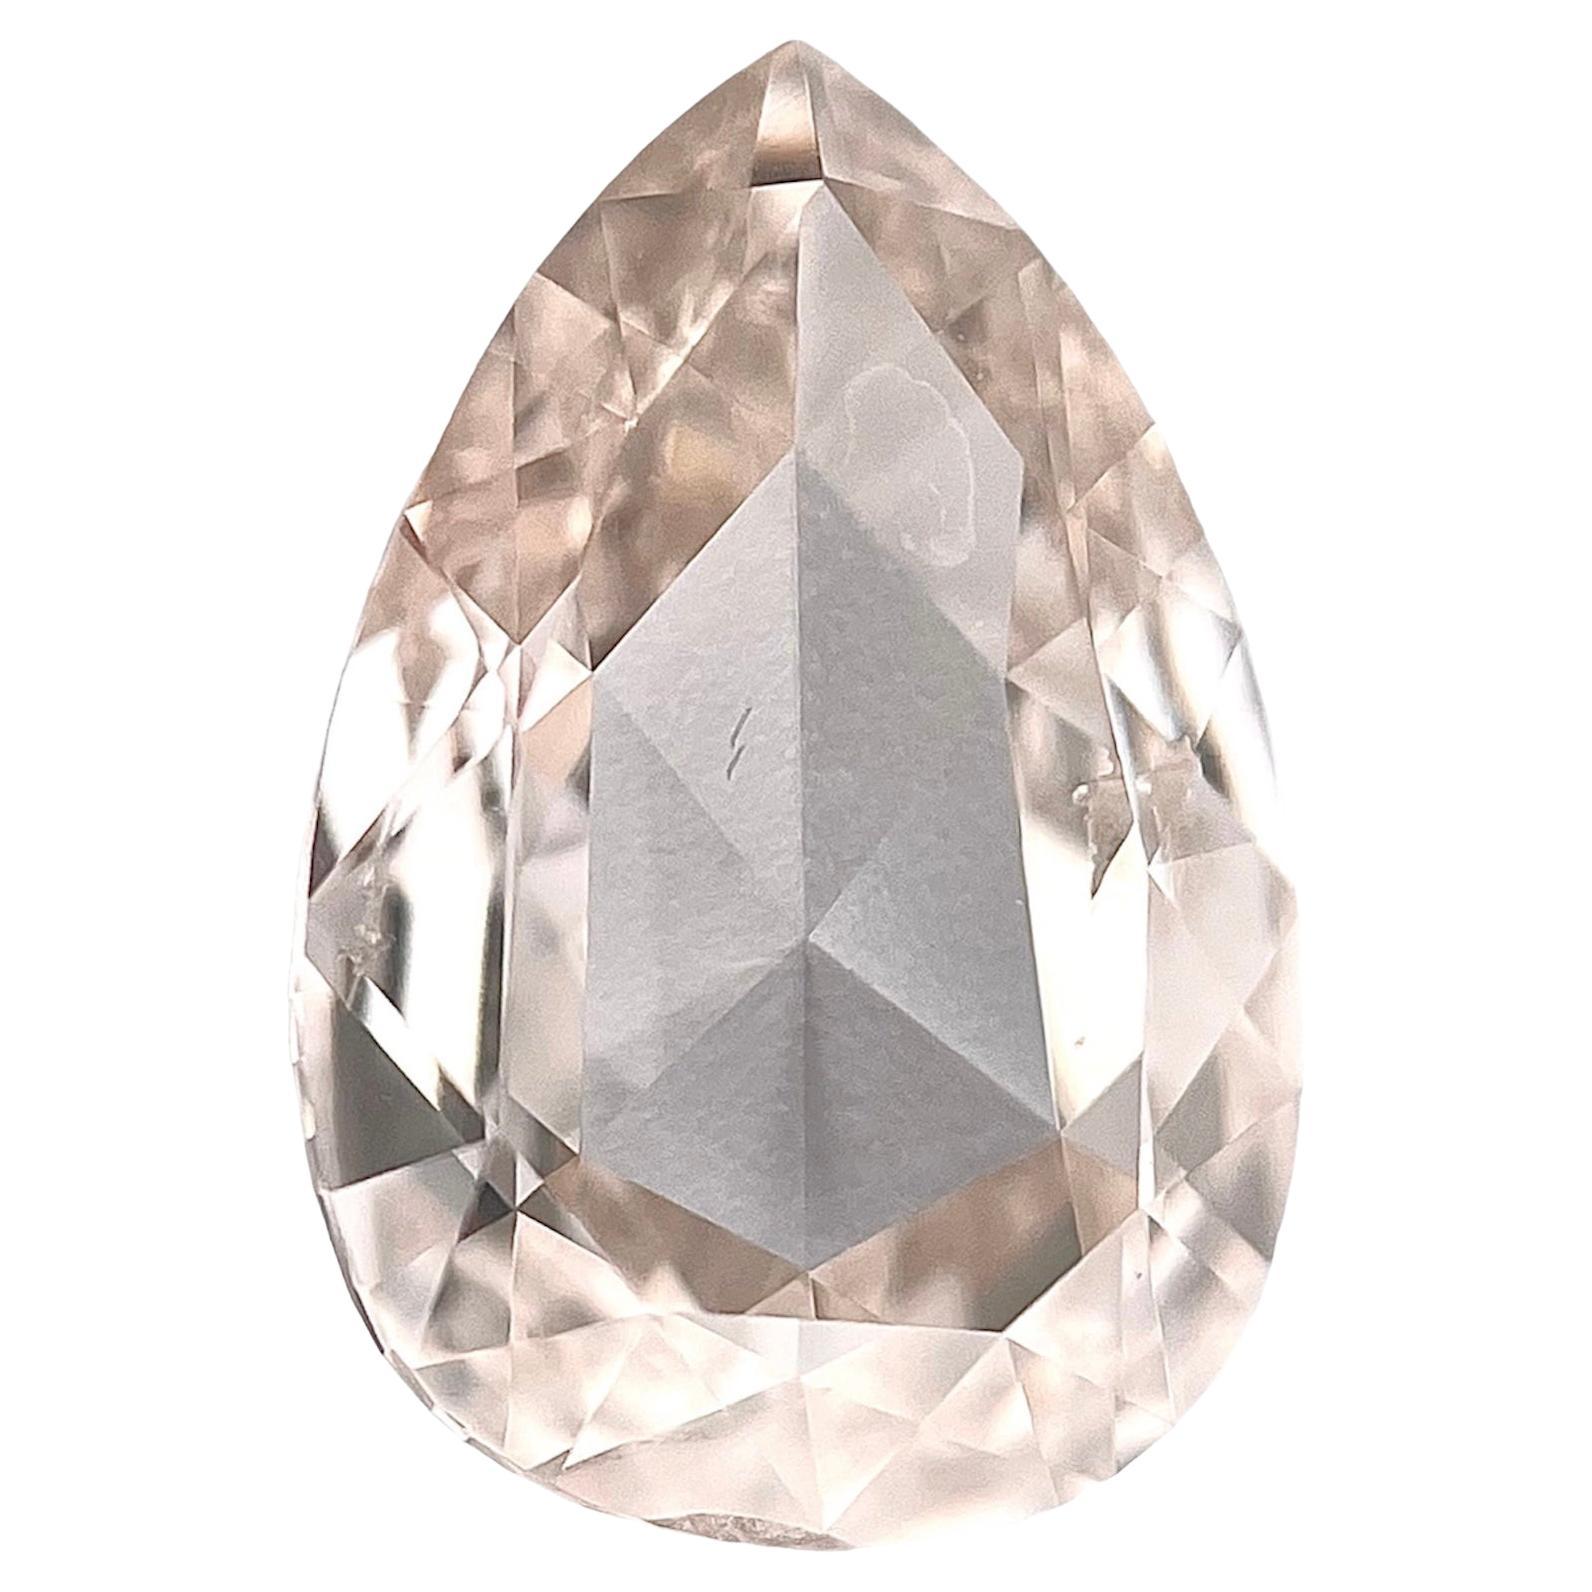 Diamant poire brillant de 1,00 carat certifié Gia L, clarté Si2 de couleur brun clair